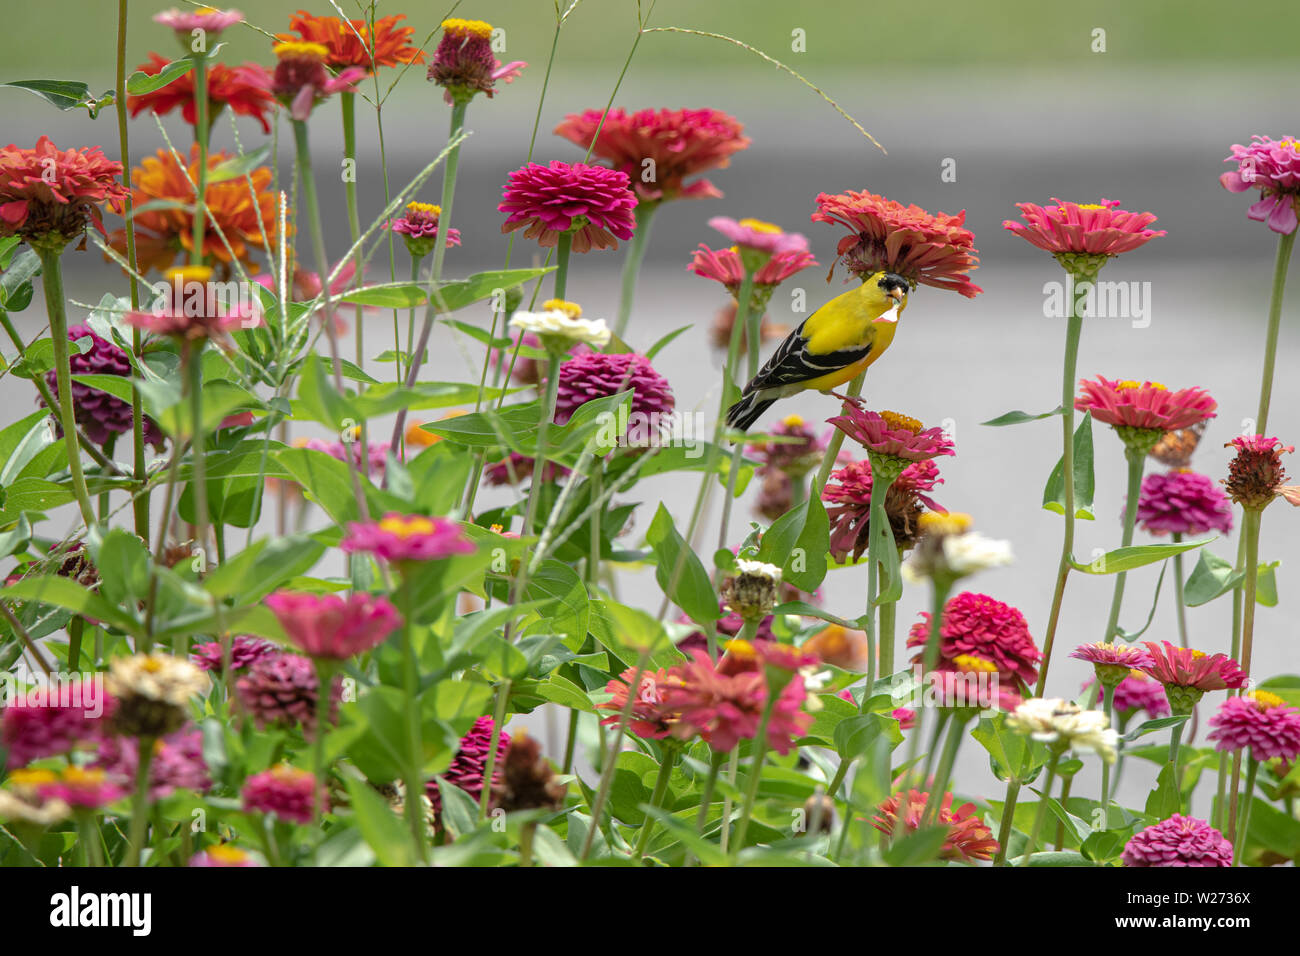 Un oiseau jaune et noir entre les perchoirs finch violet, rouge, orange et rose zinnia fleurs Banque D'Images